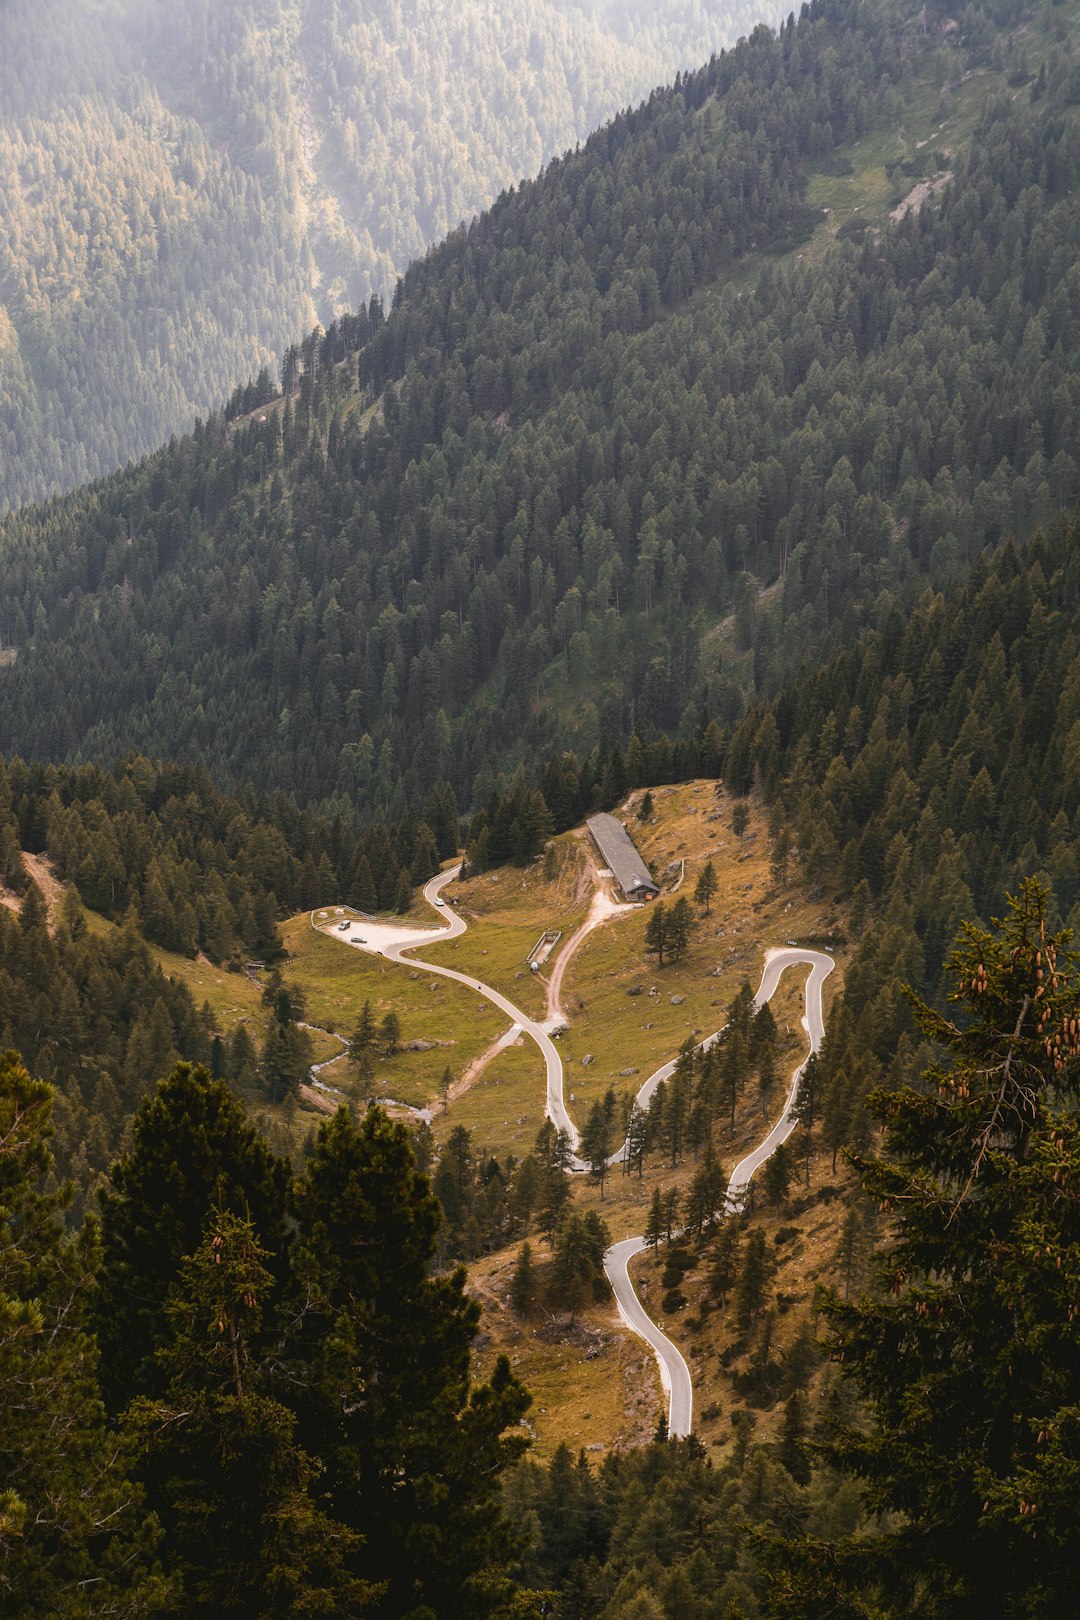 Winding road on a hillside